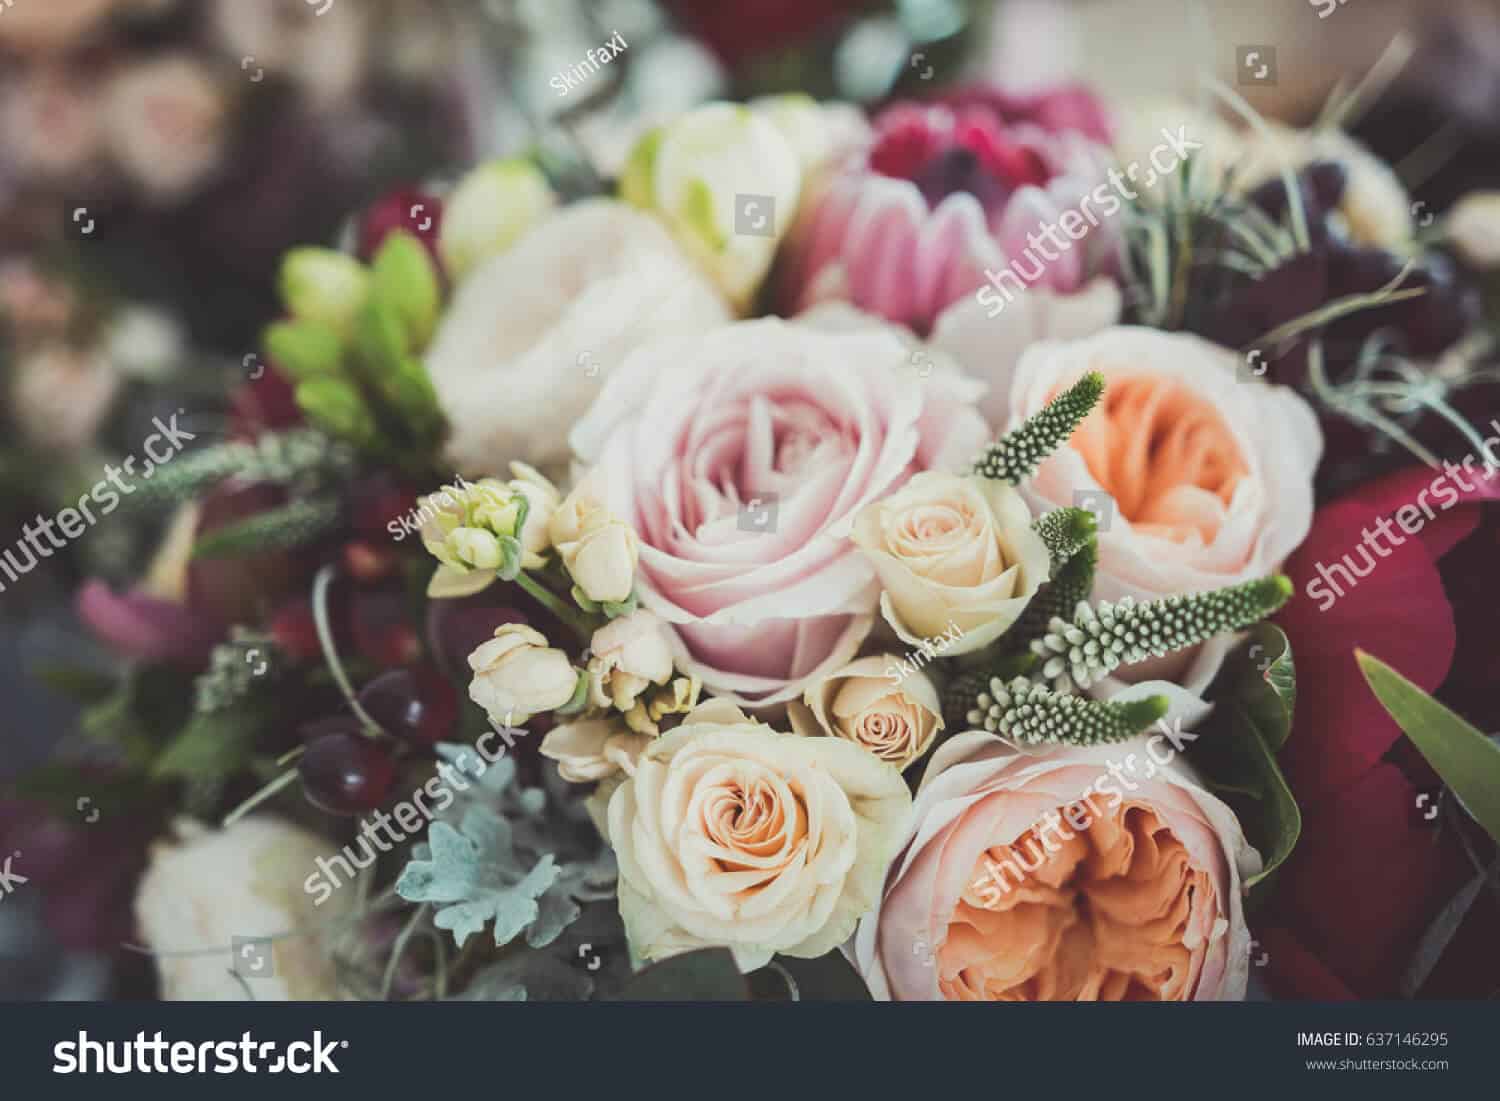 6 triệu hình ảnh bó hoa đẹp cho ngày 8/3 chất lượng cao trên Shutterstock